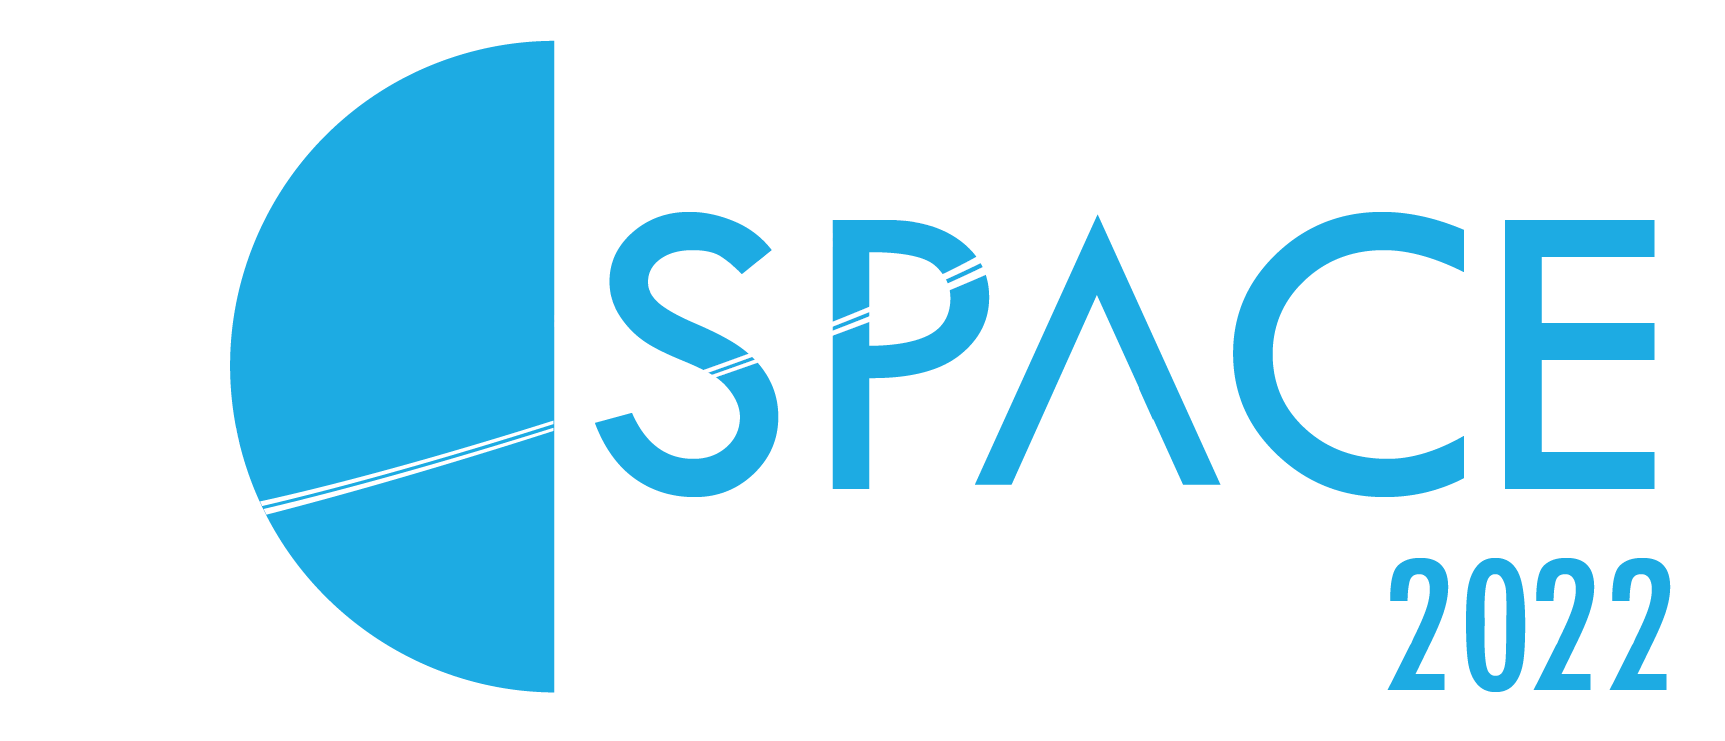 NSSC 2022 logo